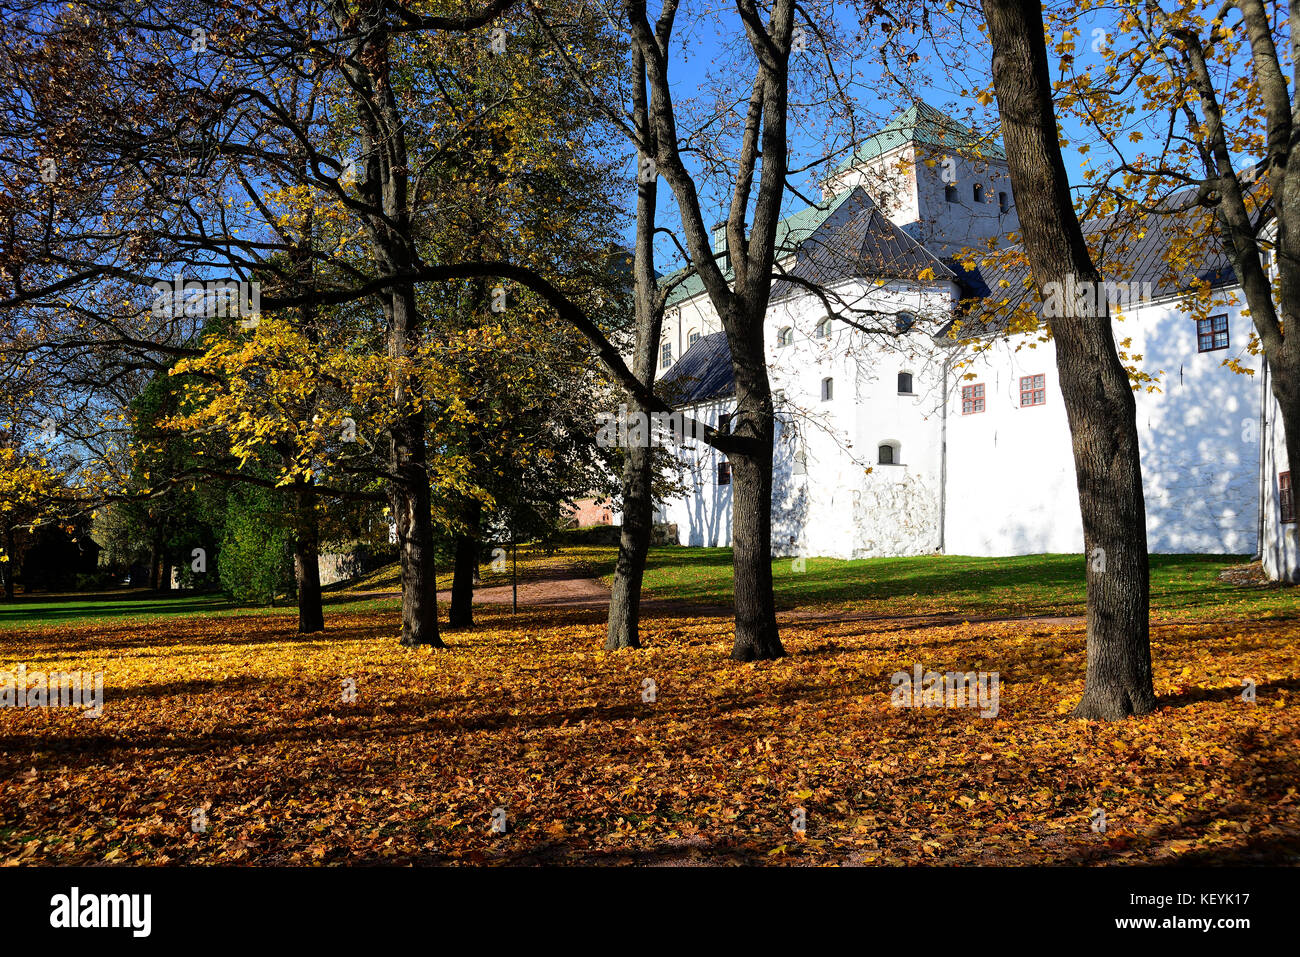 HELSINKI, TURKU – OCTOBER 21, 2017: the medieval castle Turun linna in autumn Stock Photo